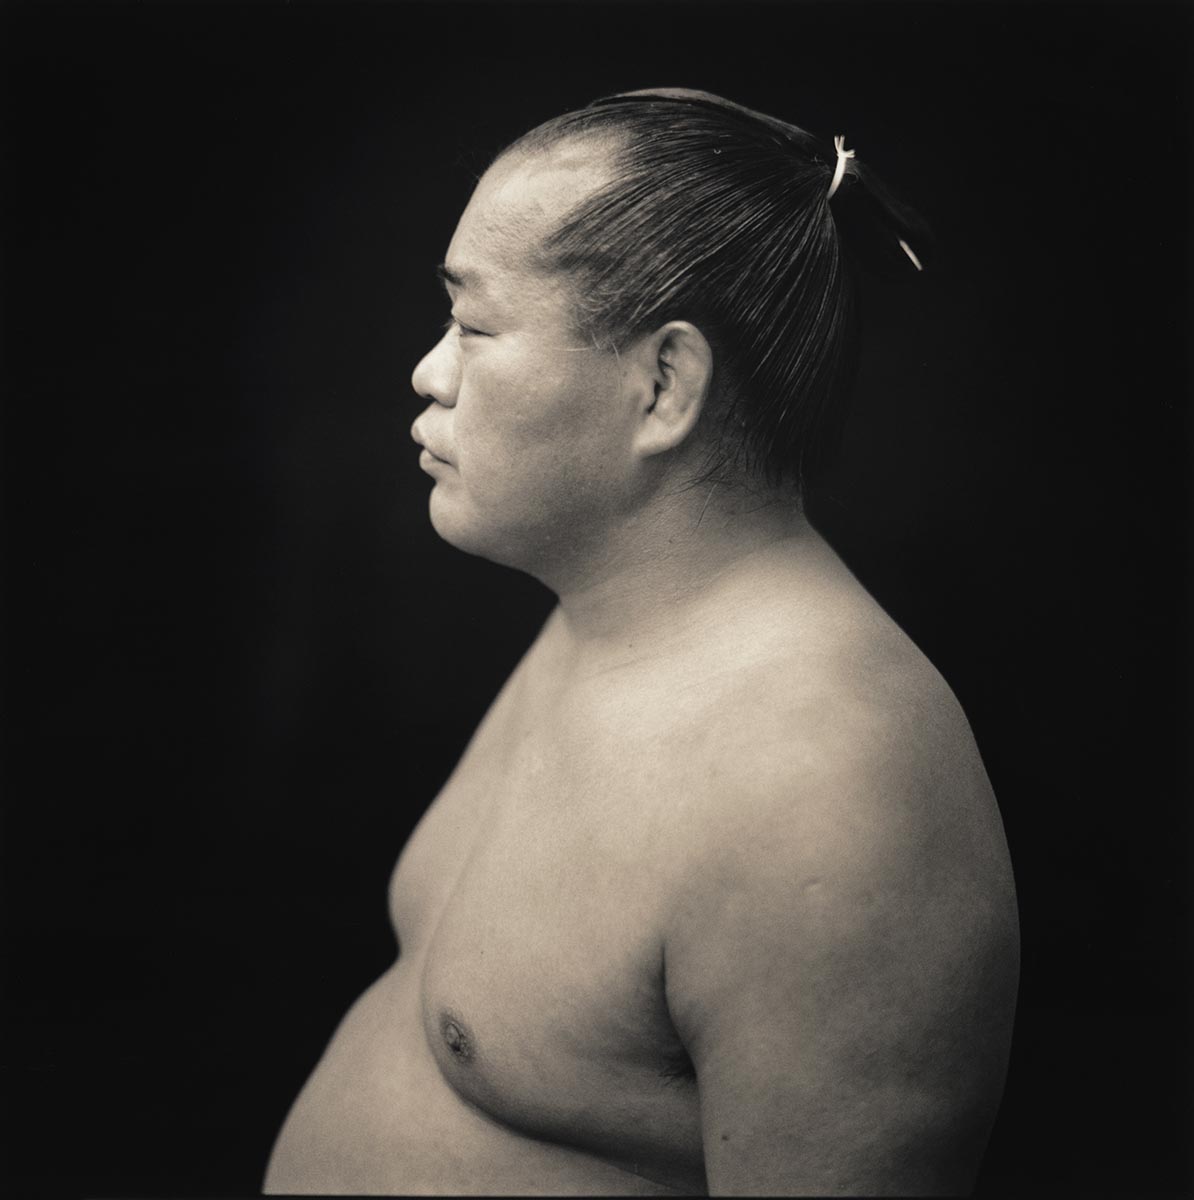 Ichinoya, Rikishi series © Hiroshi Watanabe, 2005